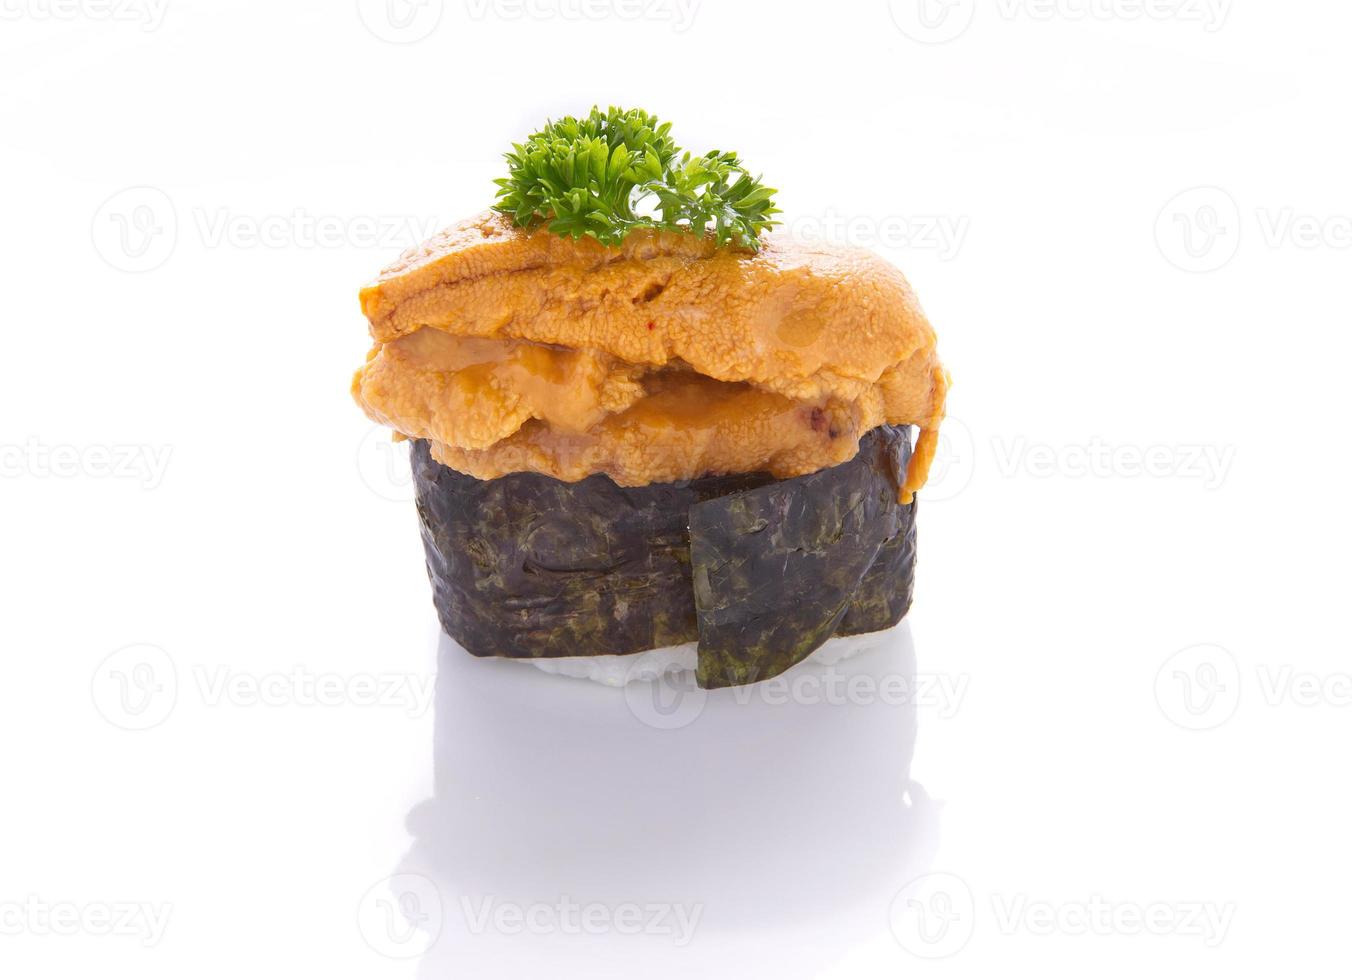 Uni sushi overflowing on a white background photo